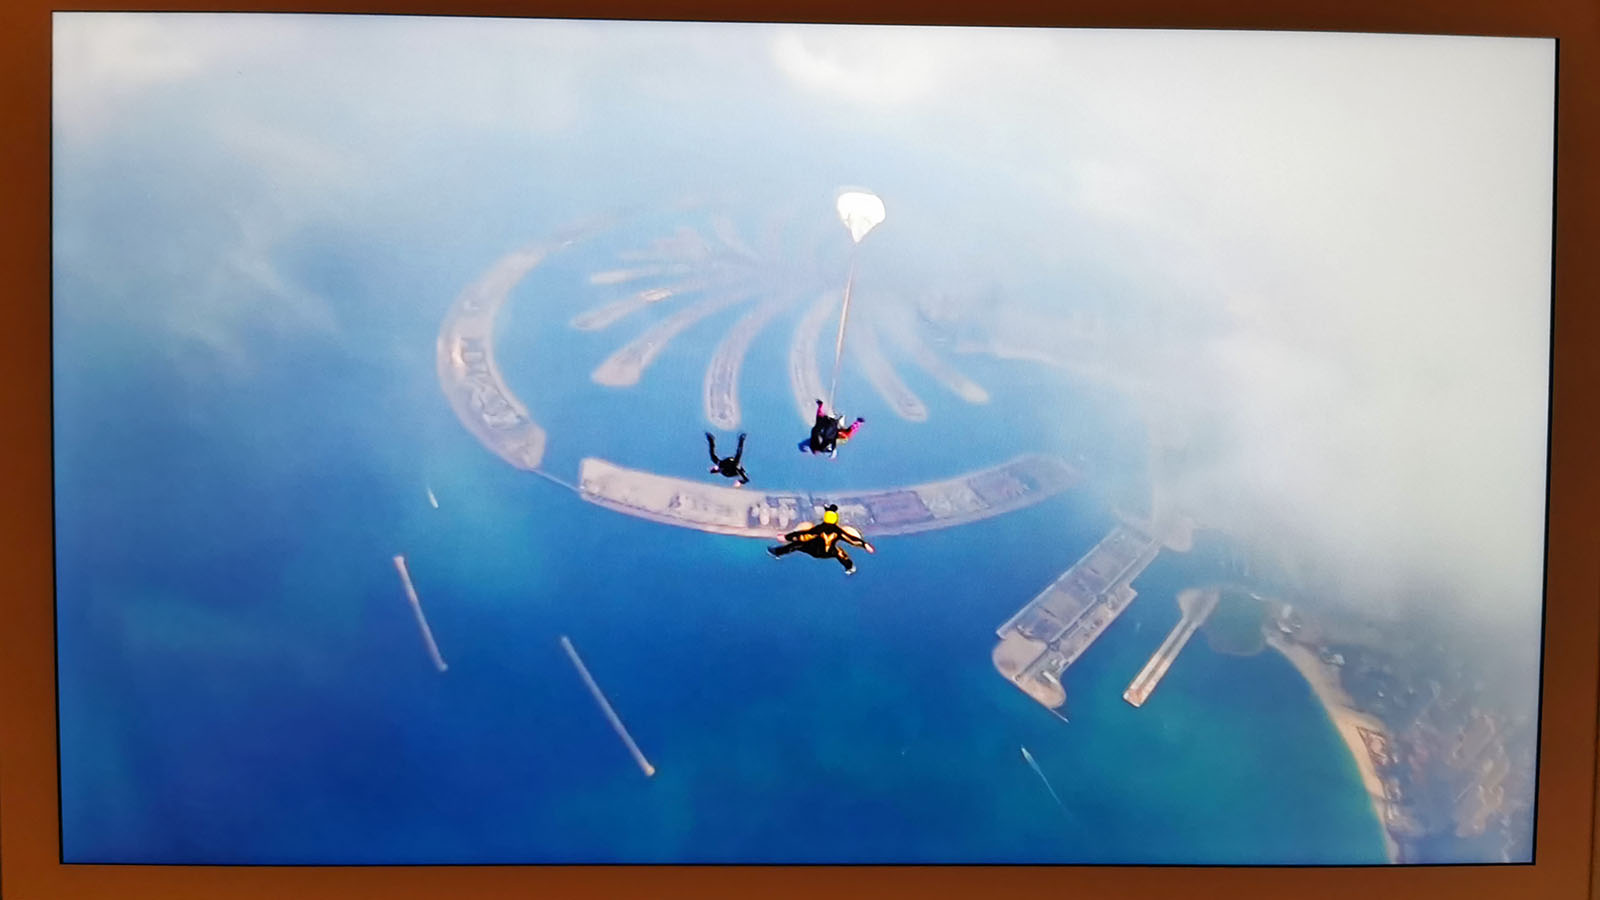 Skydiving in Dubai video in Emirates Airbus A380 Premium Economy